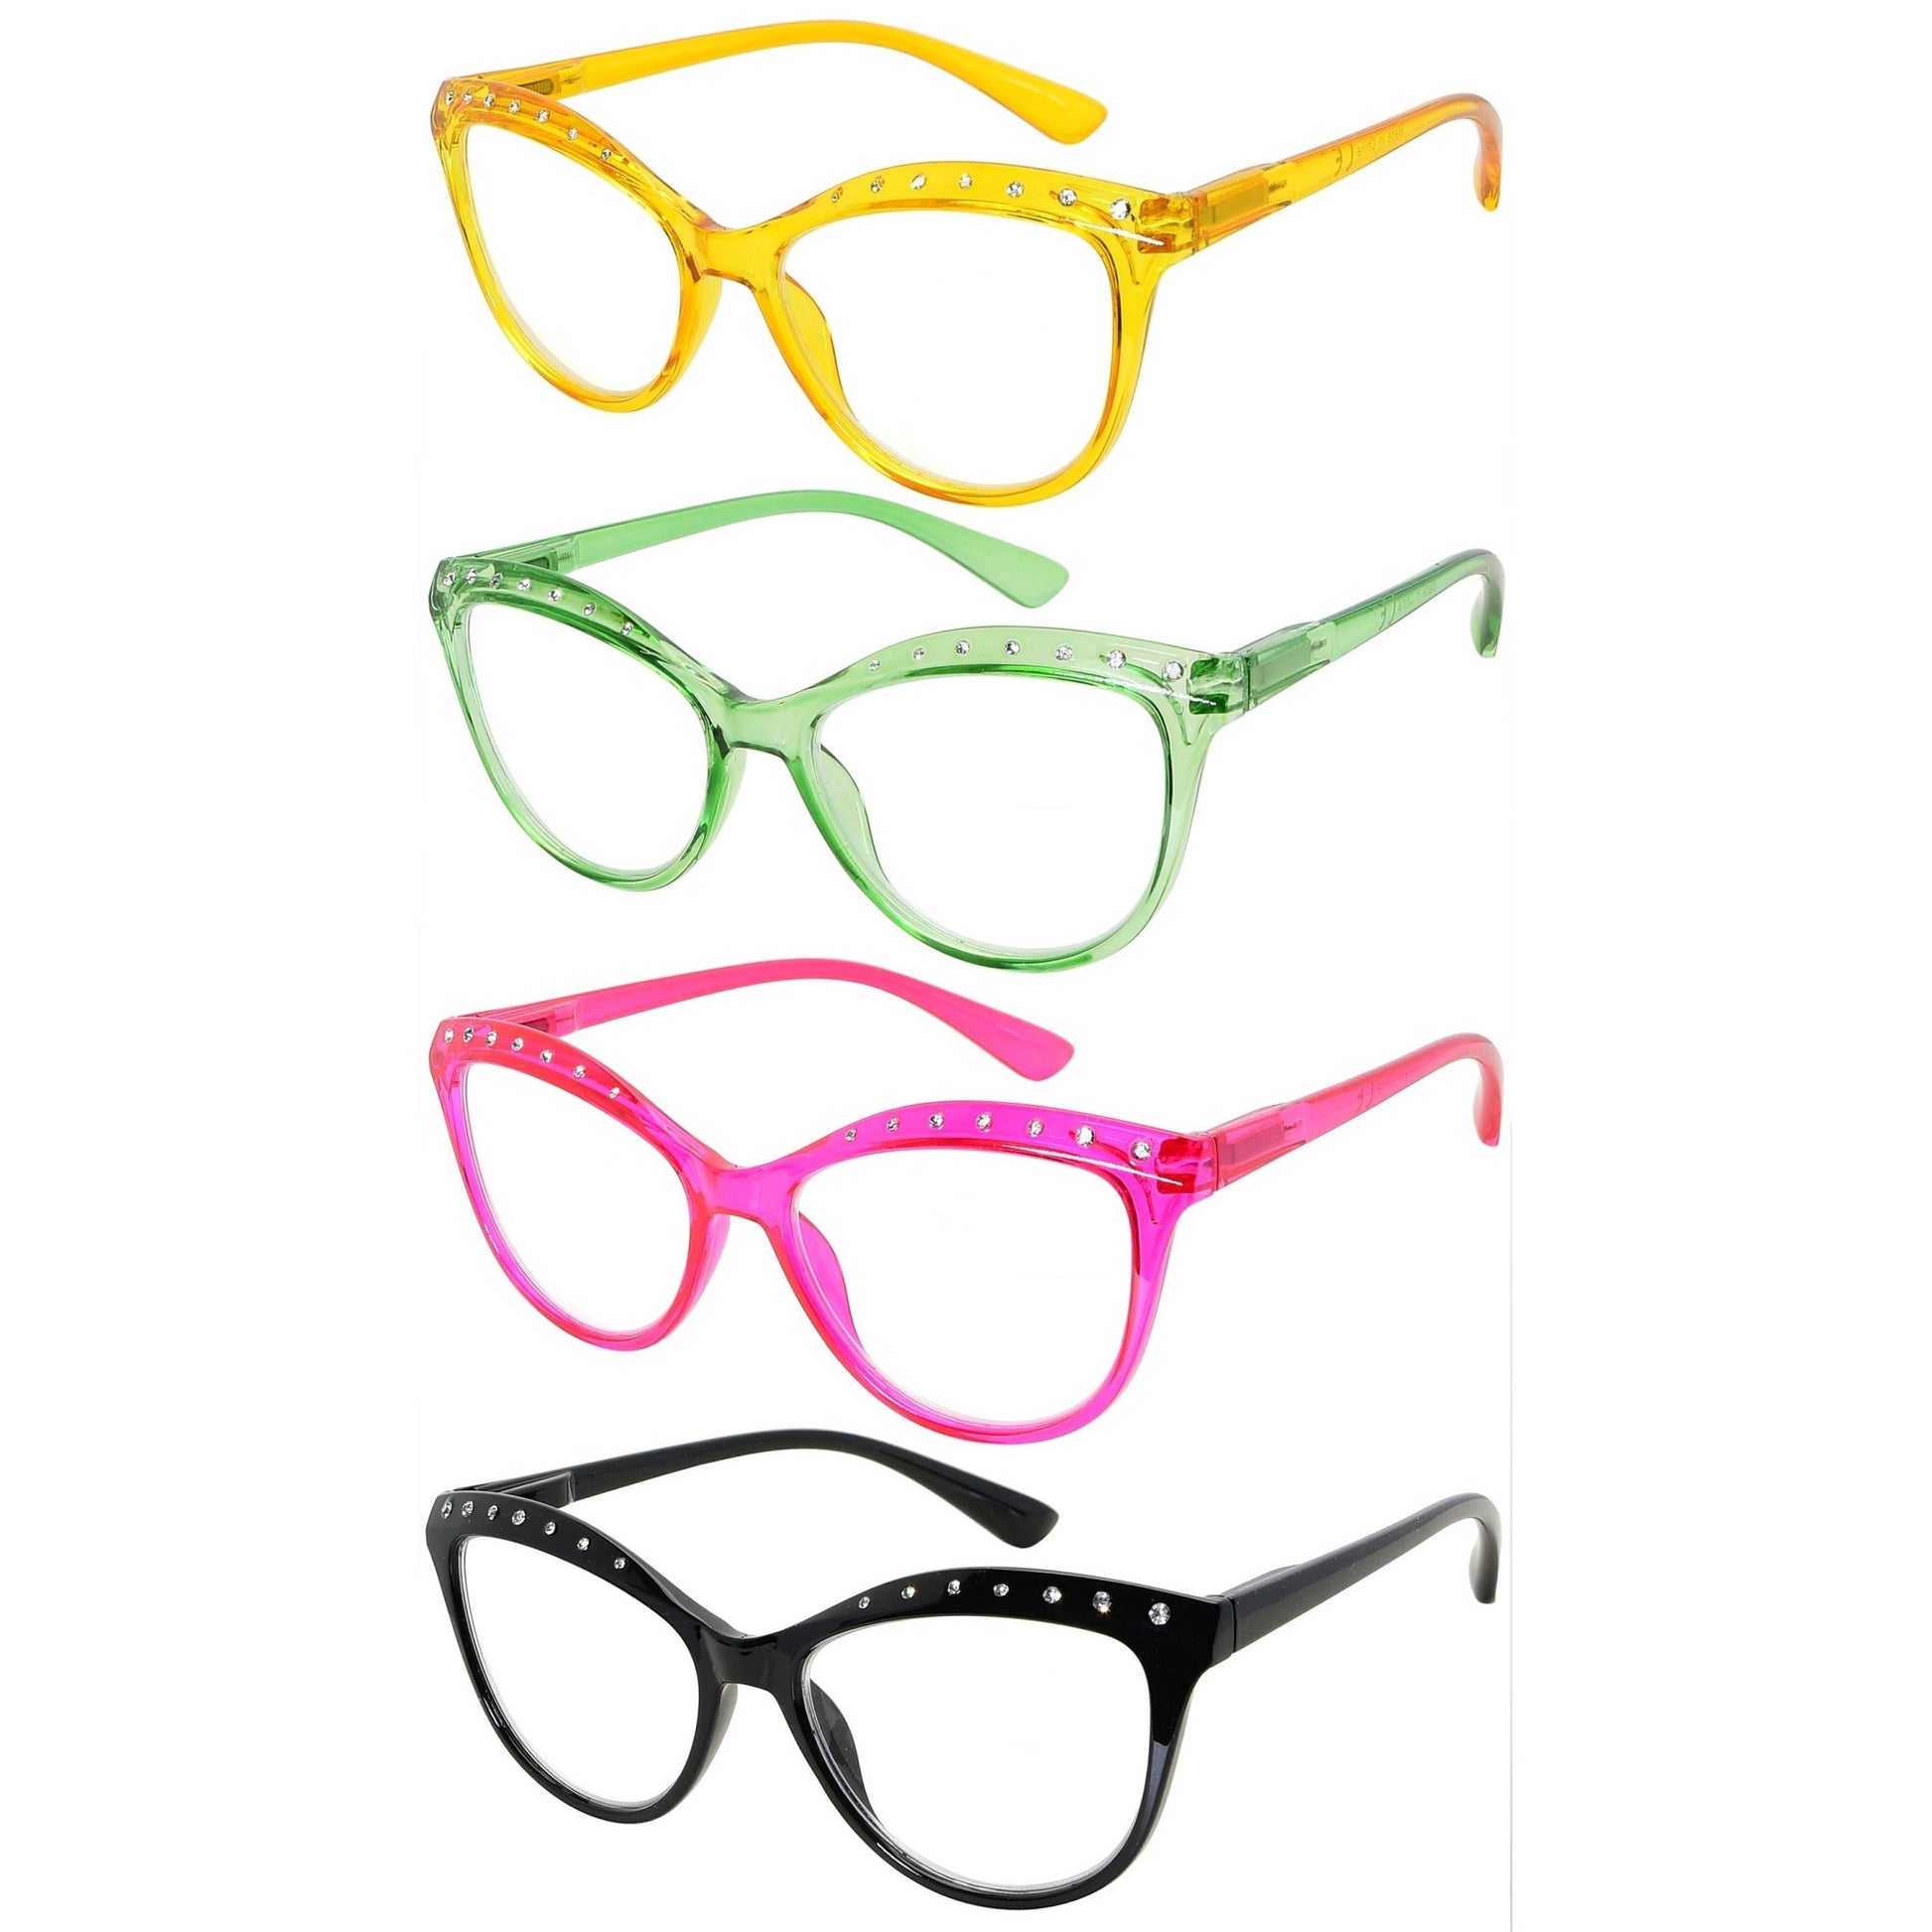 4 Pack Cat-eye Rhinestone Reading Glasses for Women R2001